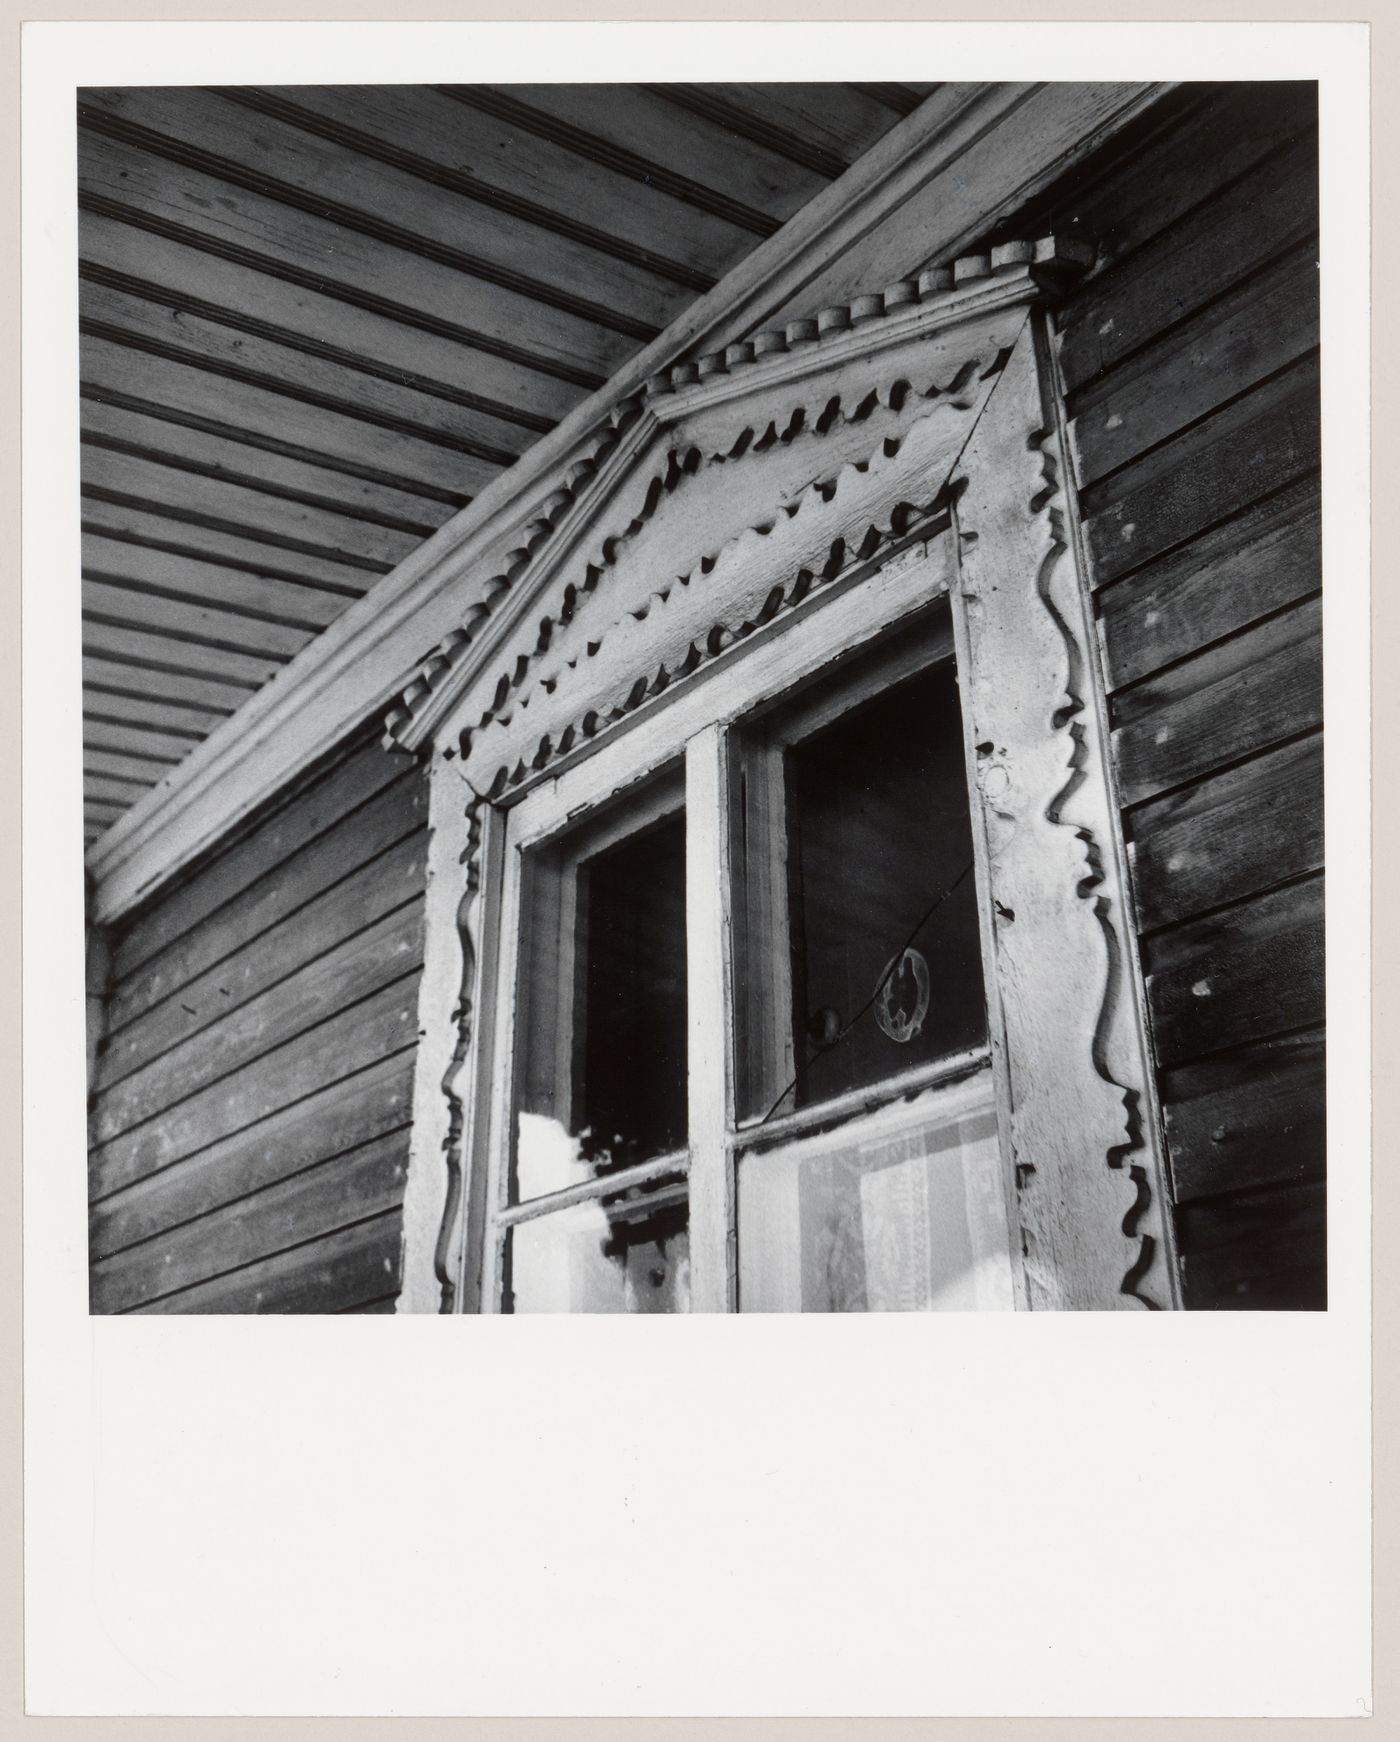 Détail de la moulure d'une fenêtre de la maison de l'artisan Servule Morneau, Saint-Jean-Port-Joli, Québec